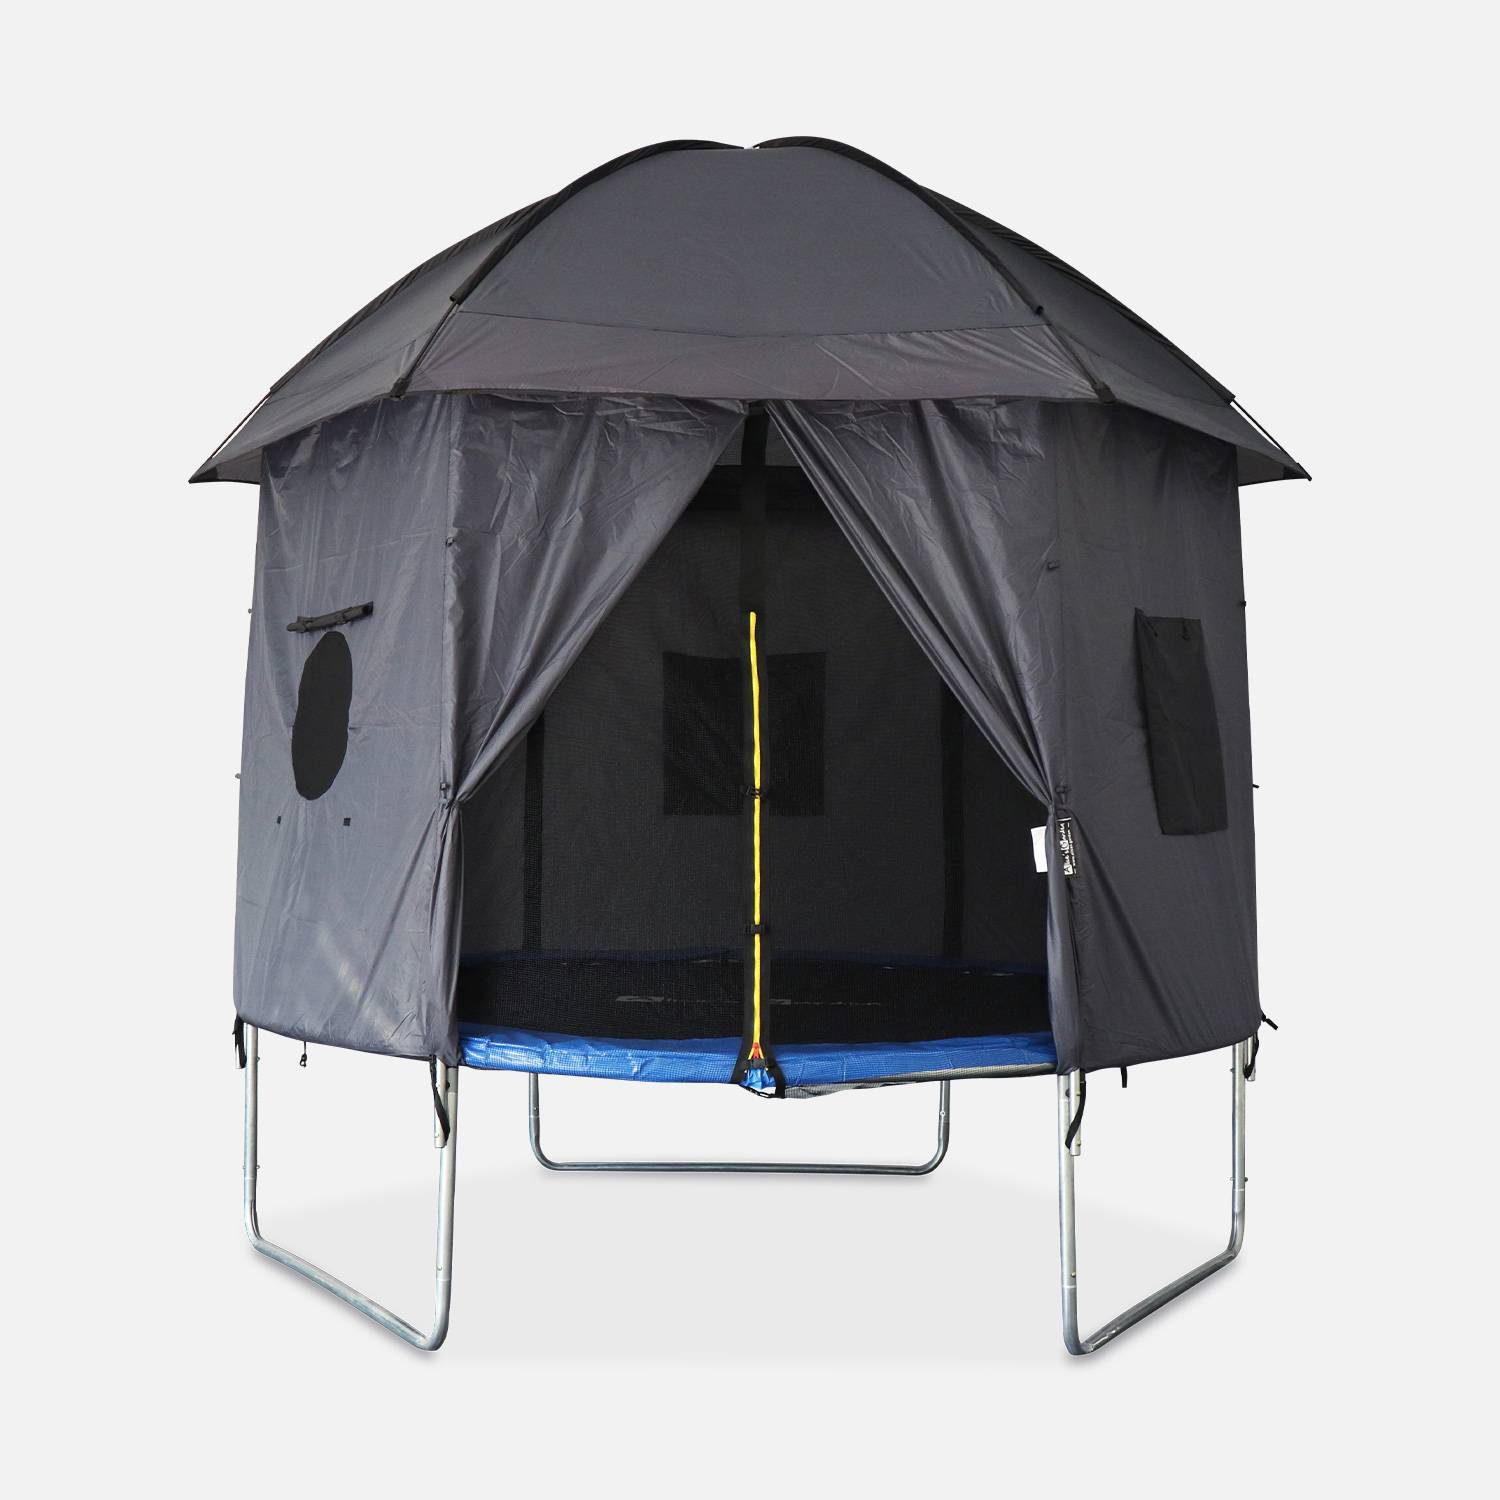 Campingzelt für Trampolin, Trampolinhütte, Polyester, UV-behandelt, 1 Tür, 3 Fenster und Transporttasche Photo2